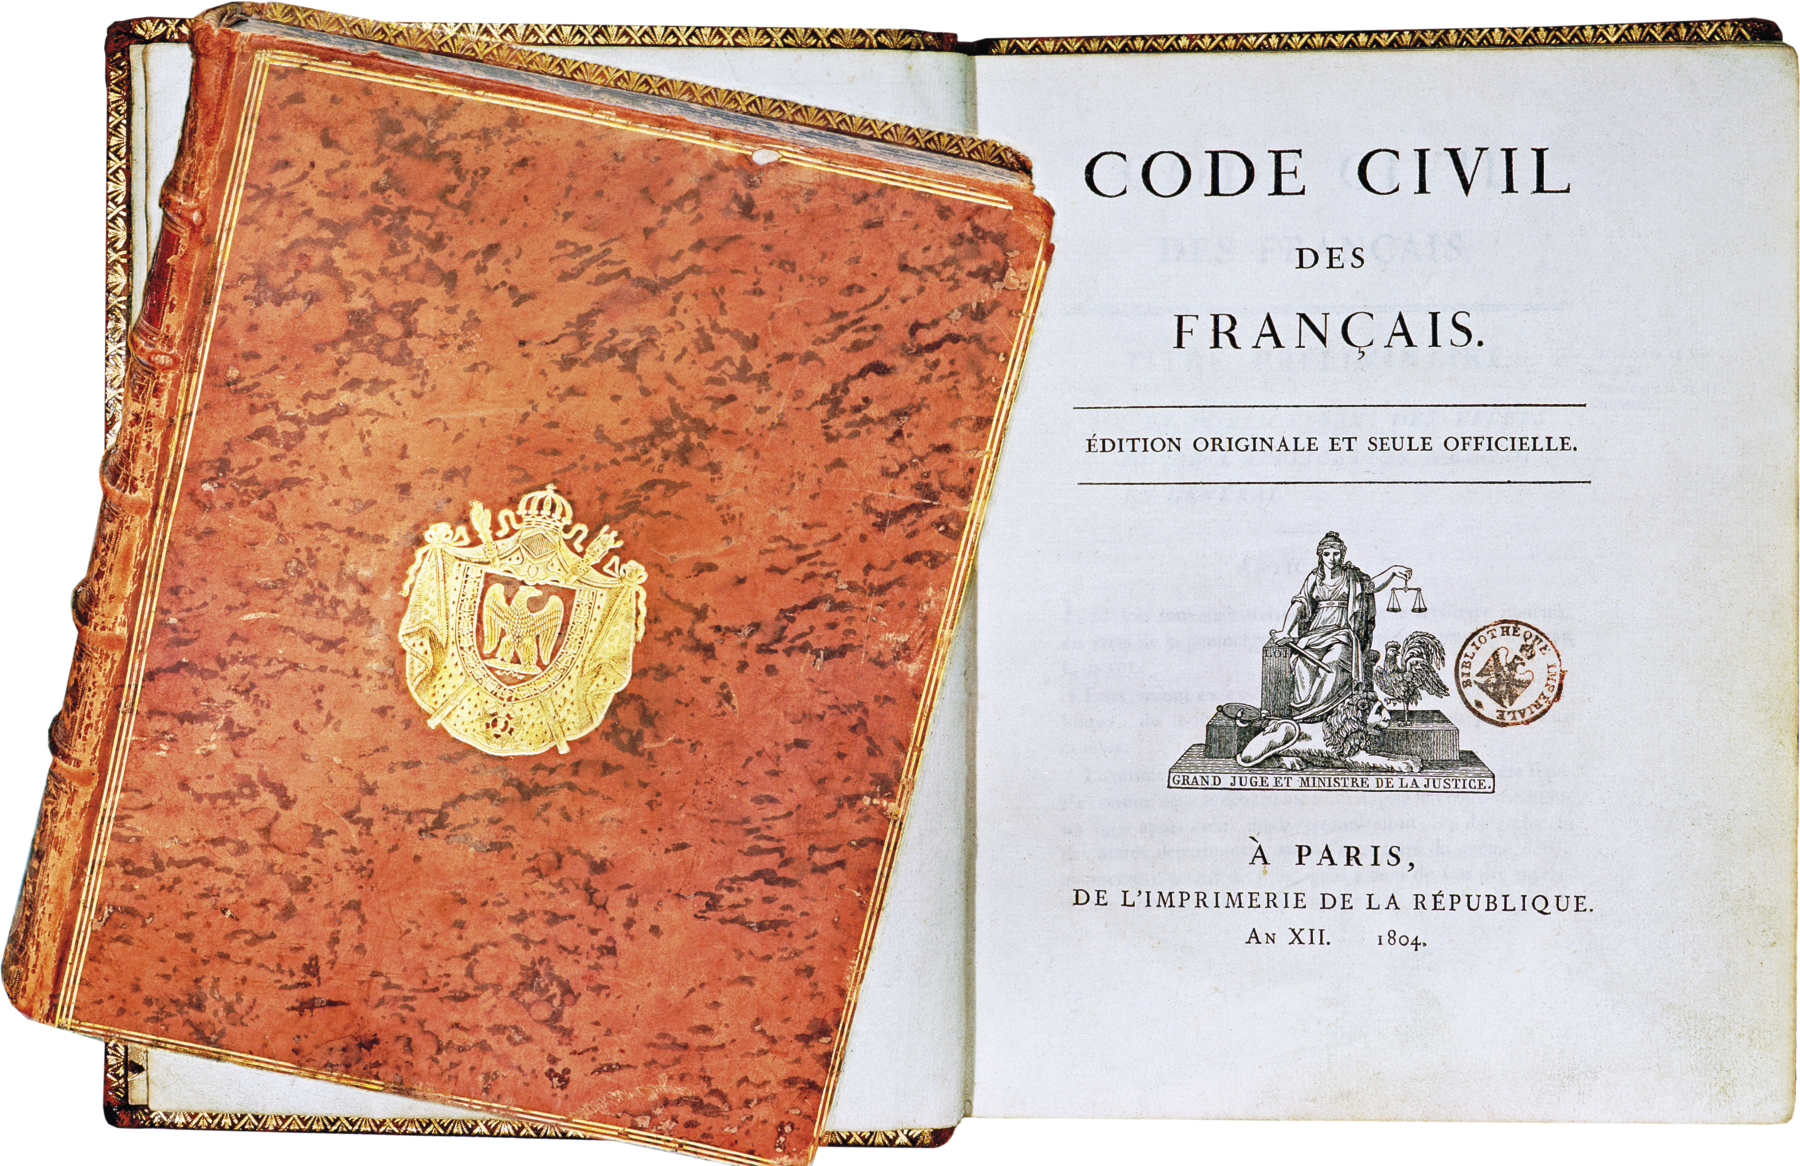 Fotografia. Destaque para um livro aberto contendo o texto, em francês, 'Código Civil francês'. À esquerda, imagem do livro fechado, com a capa marrom clara e um brasão dourado ao centro.